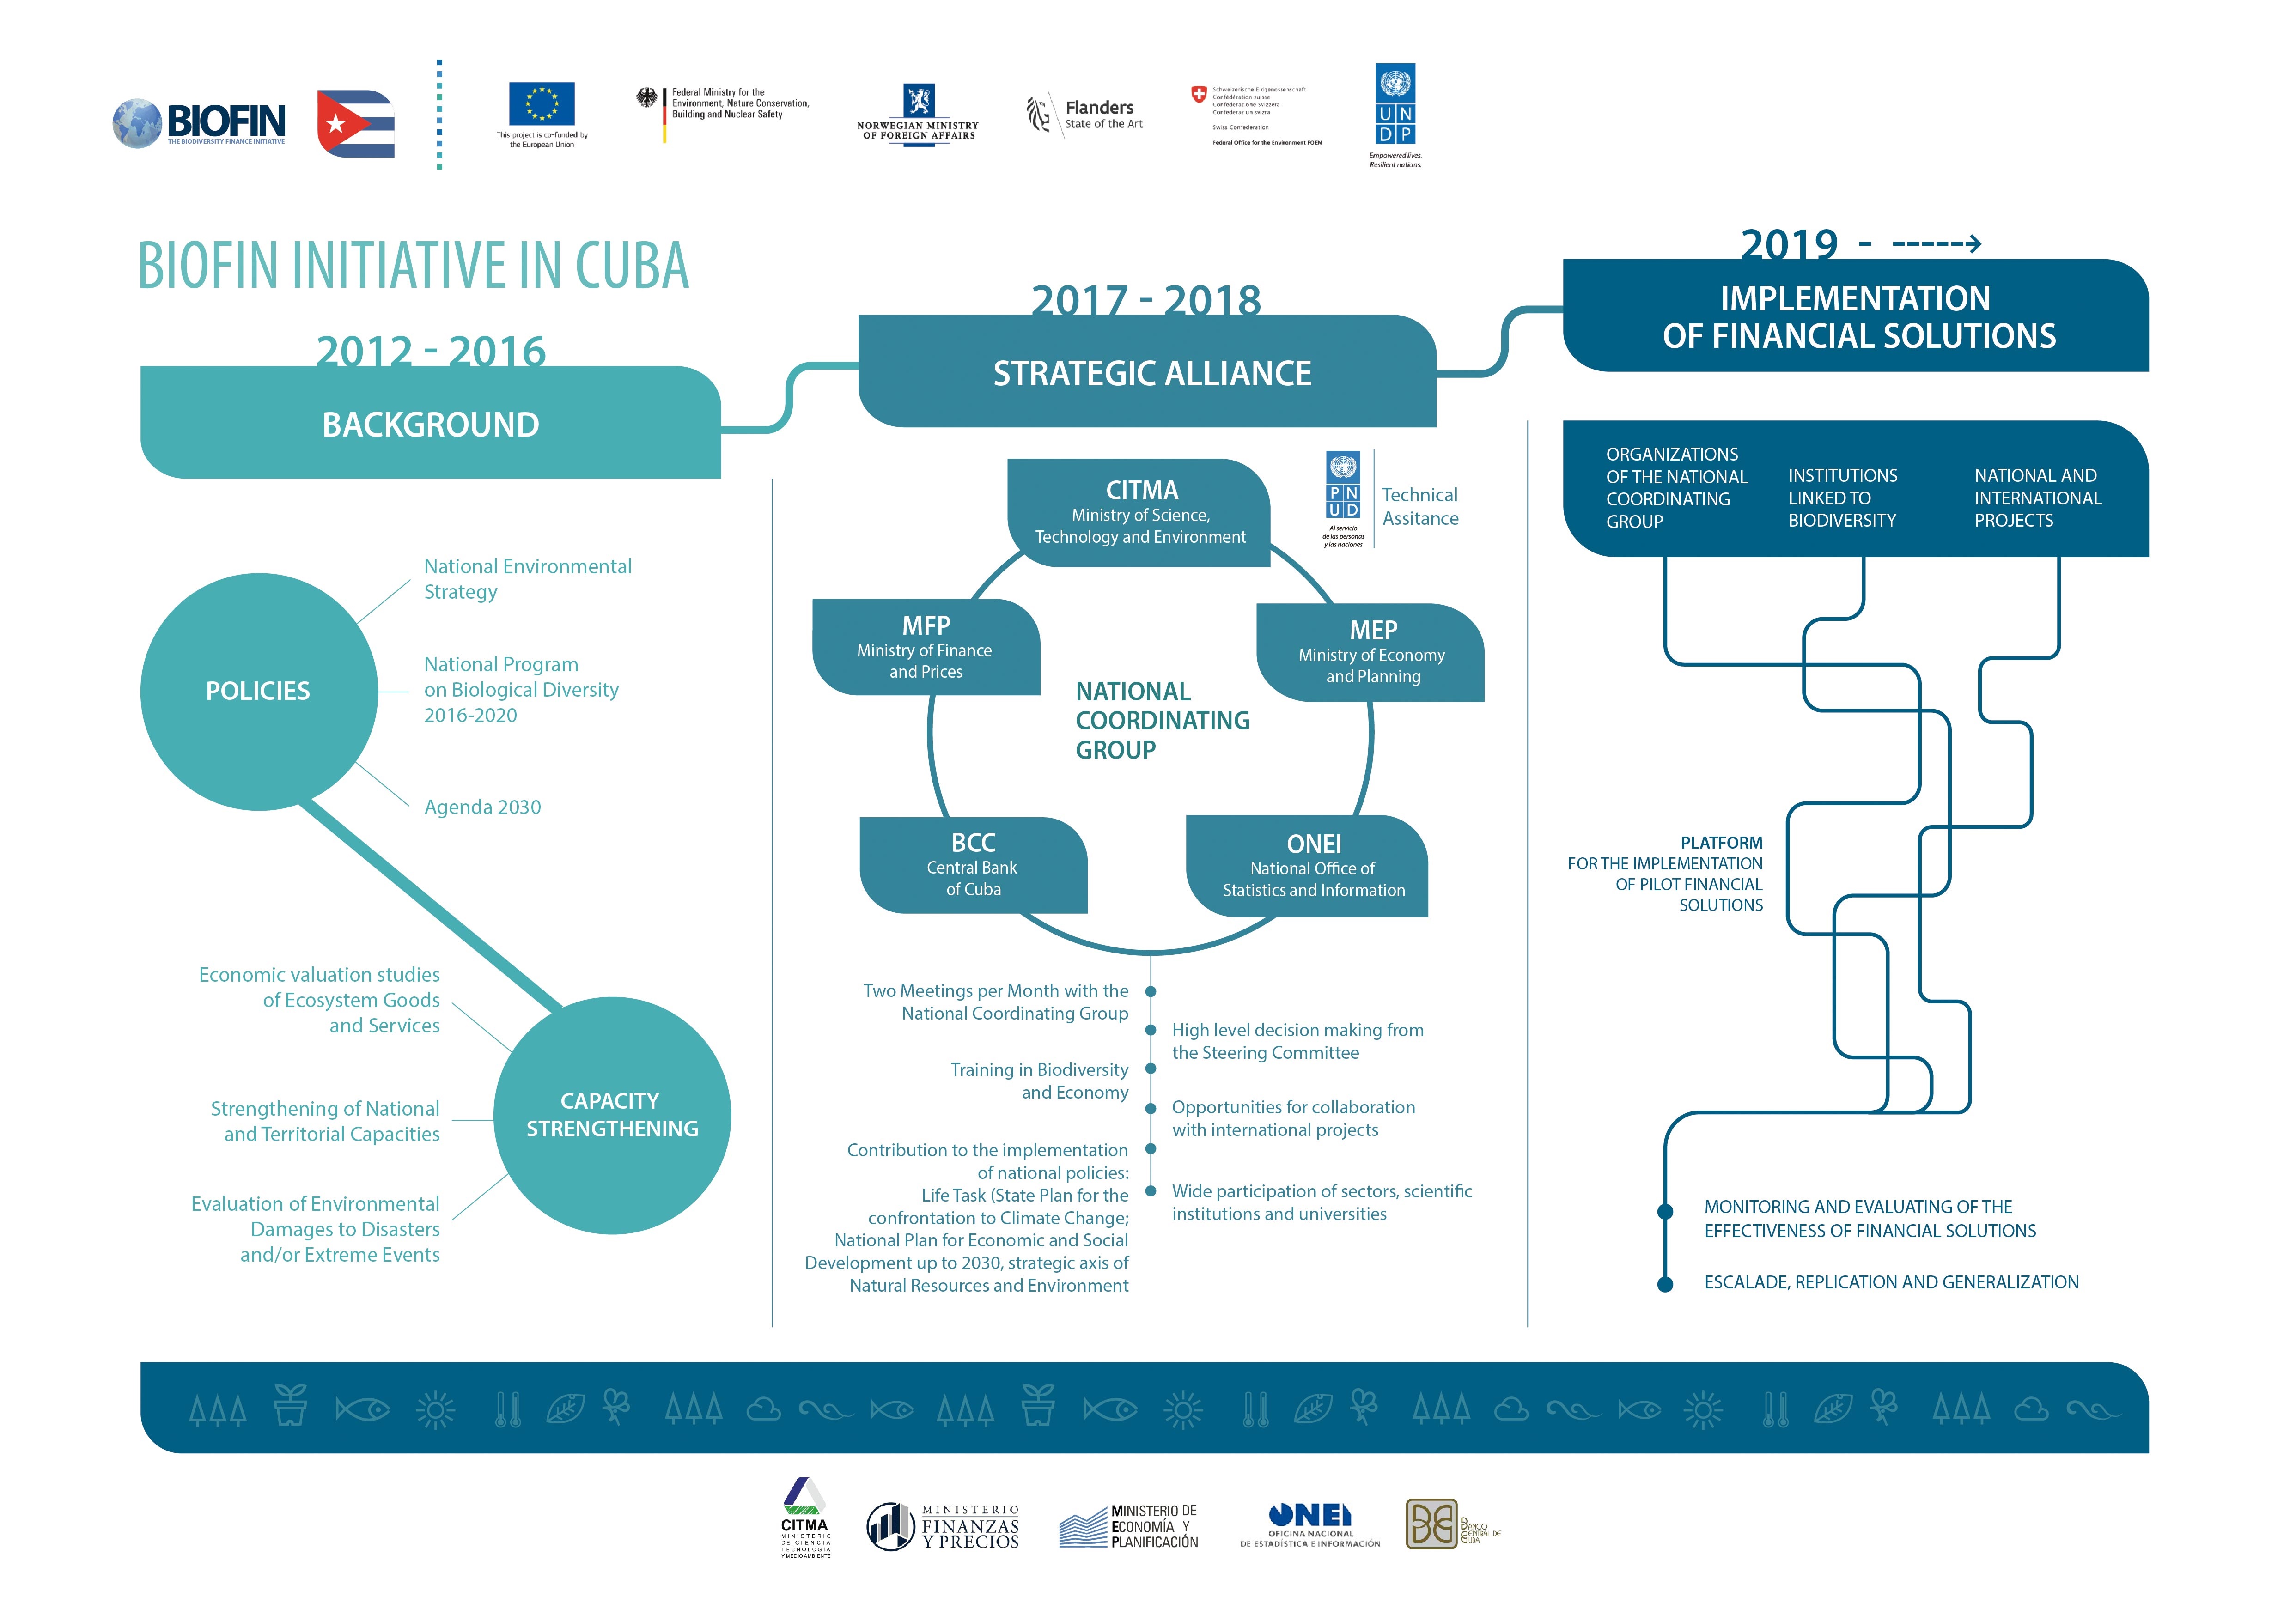 La iniciativa BIOFIN en Cuba